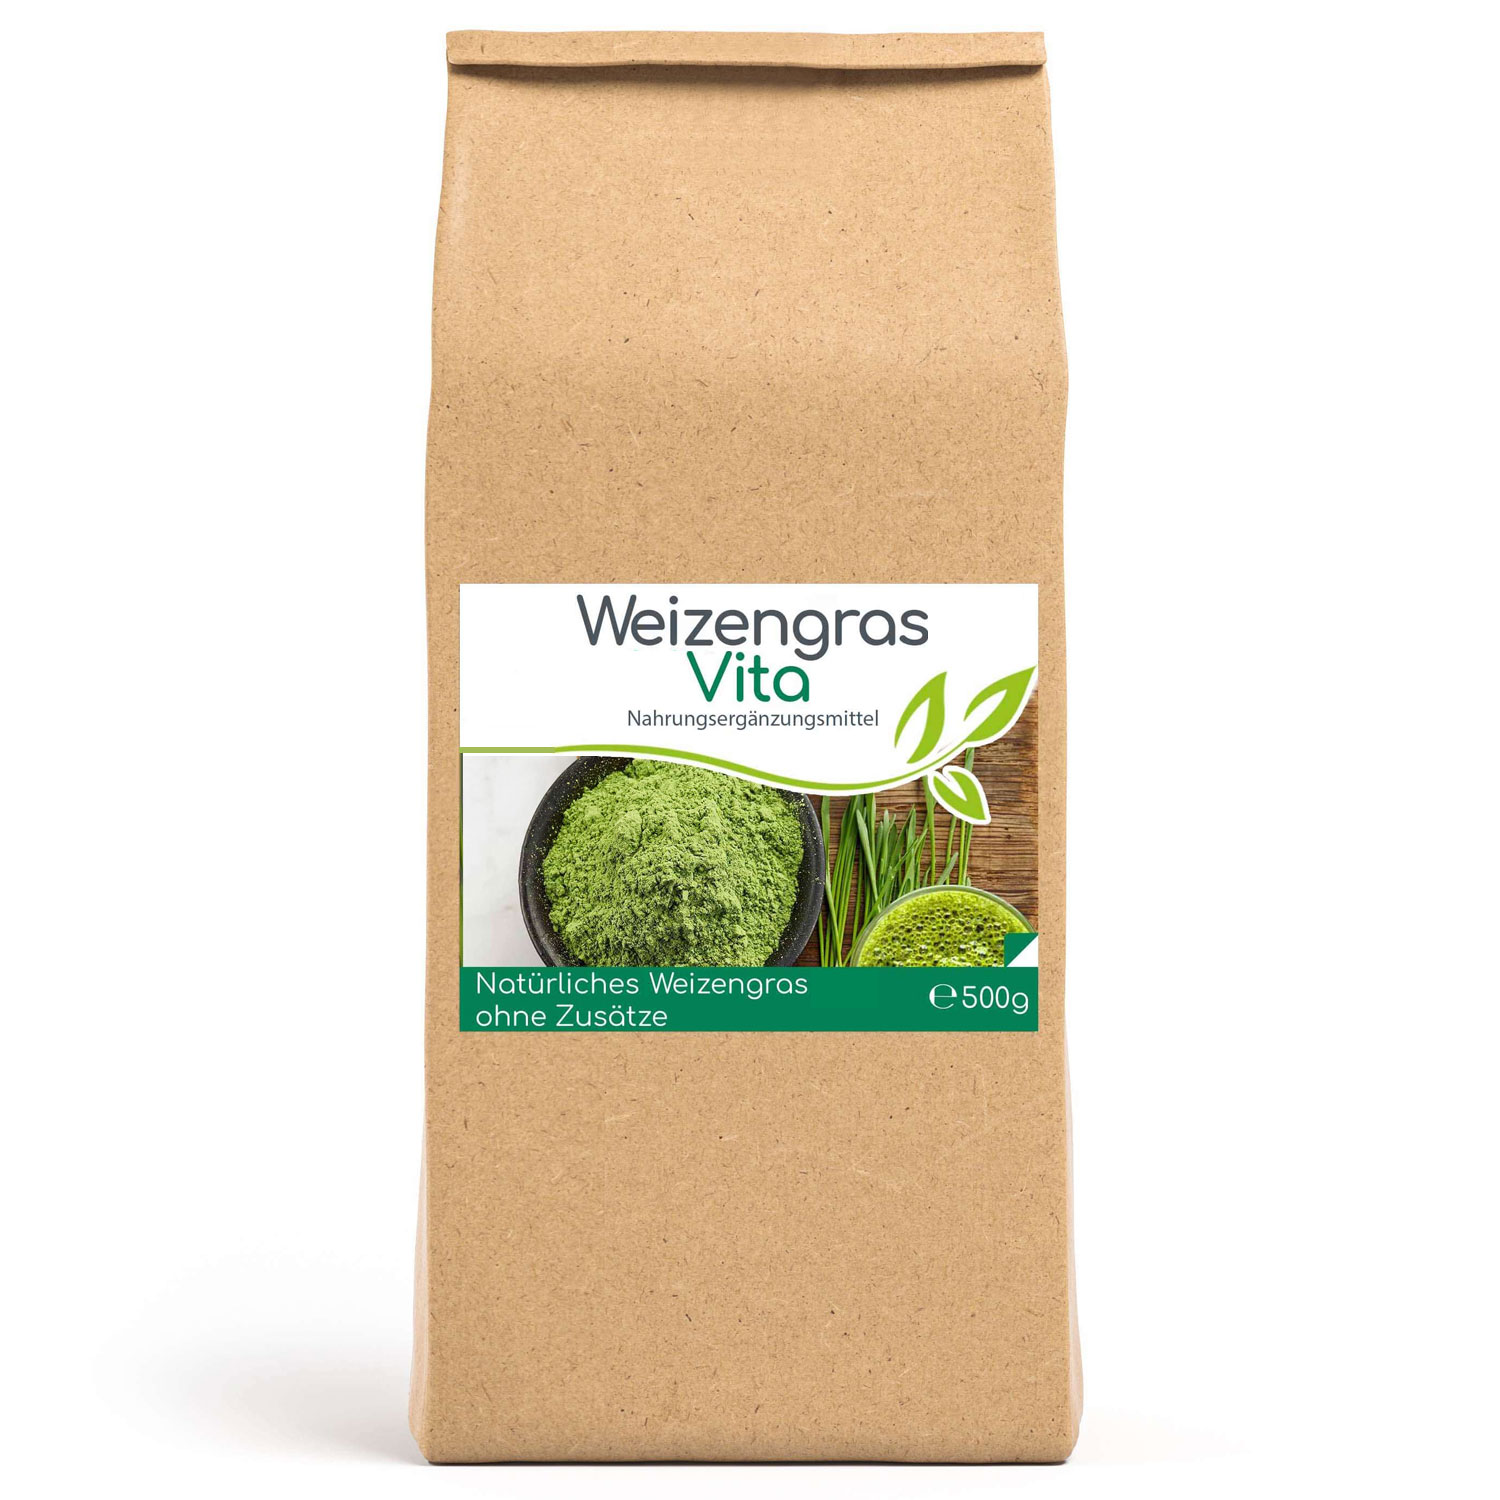 Weizengras Vita von Cellavita - 500g